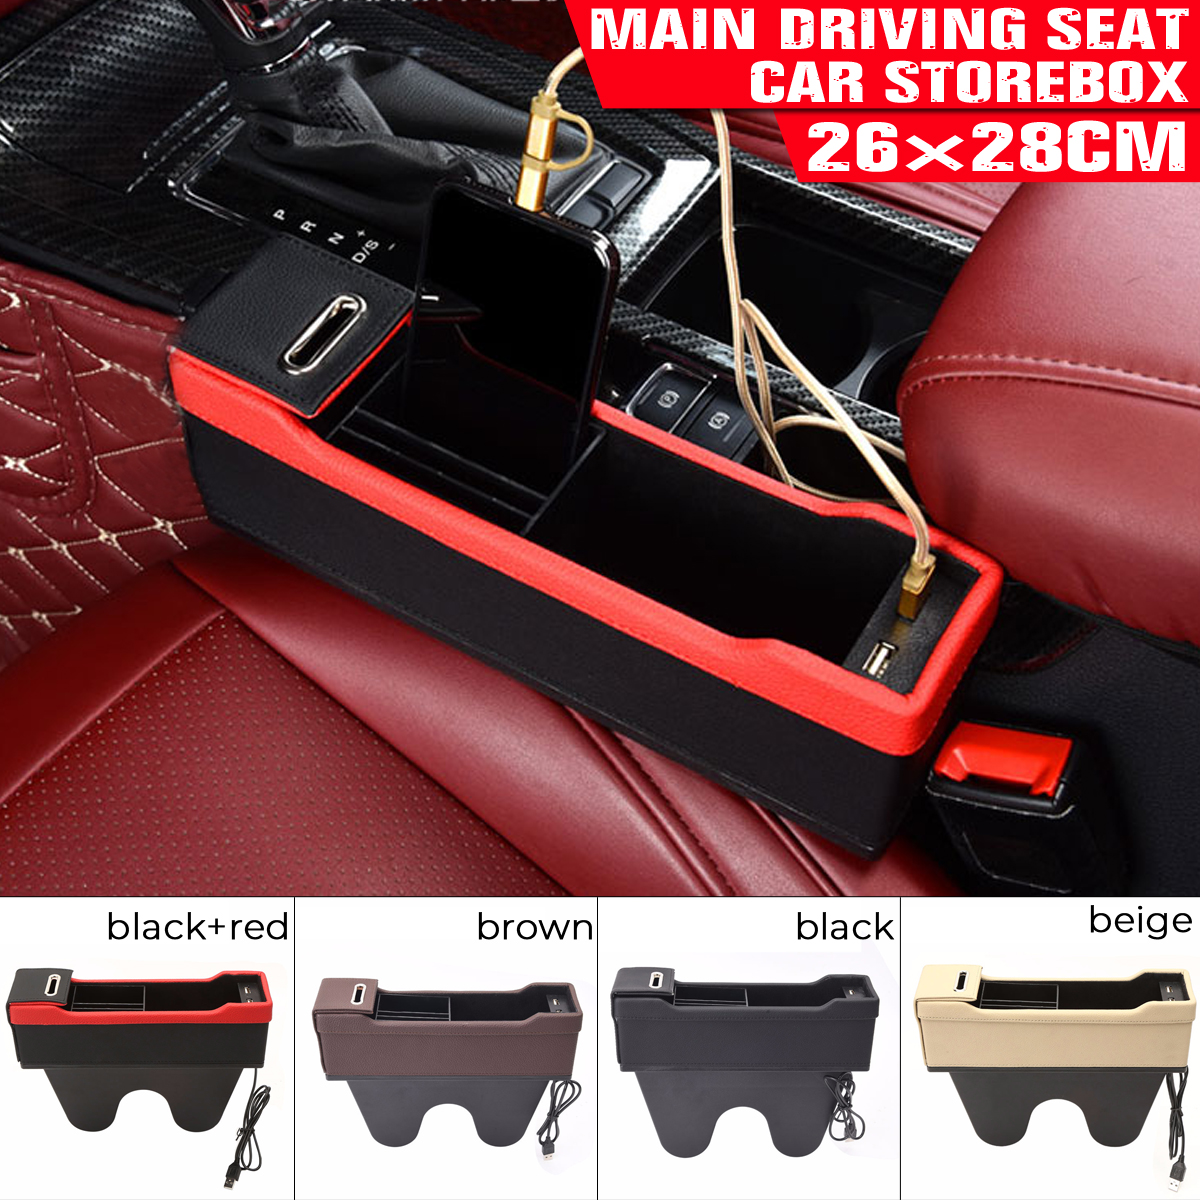 Car-Left-Seat-Gap-Leather-Phone-ID-Card-Key-Storage-Coin-Box-Car-Cradles-Organizer-with-Dual-USB-Por-1647169-1